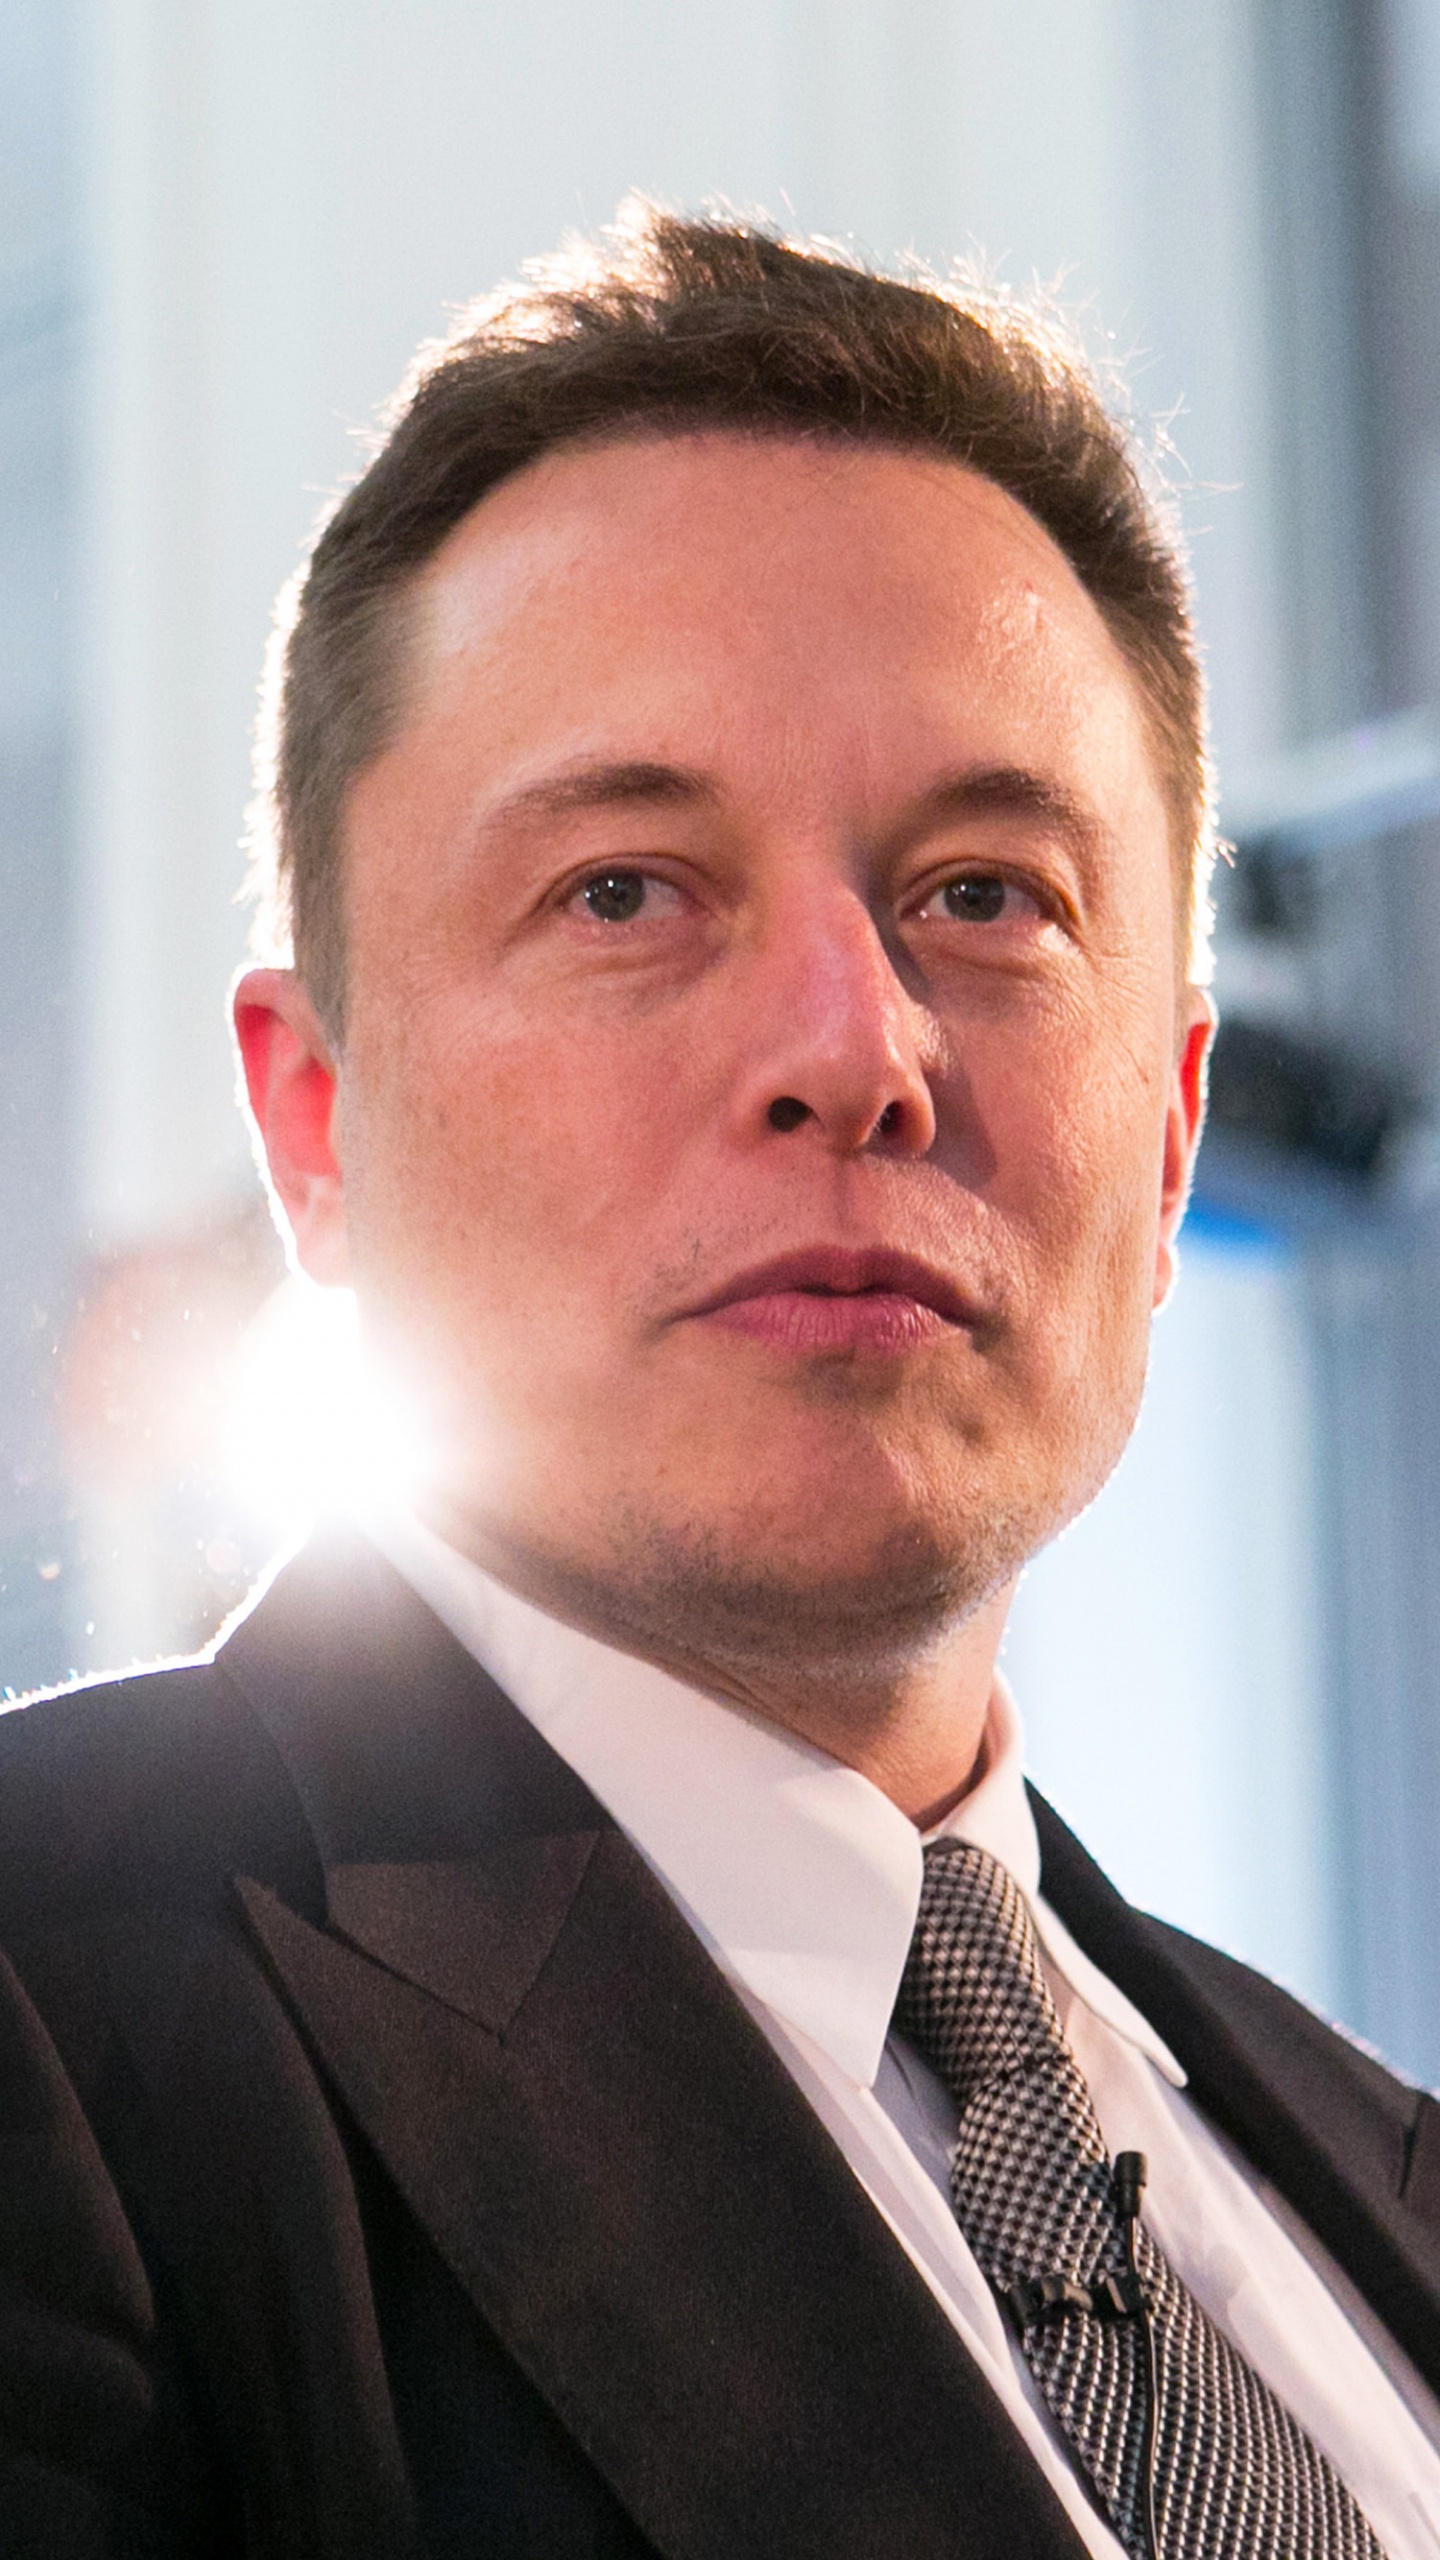 Elon Musk, Kaufmann, Anzug, Gesichtsbehaarung, Business. Wallpaper in 1440x2560 Resolution